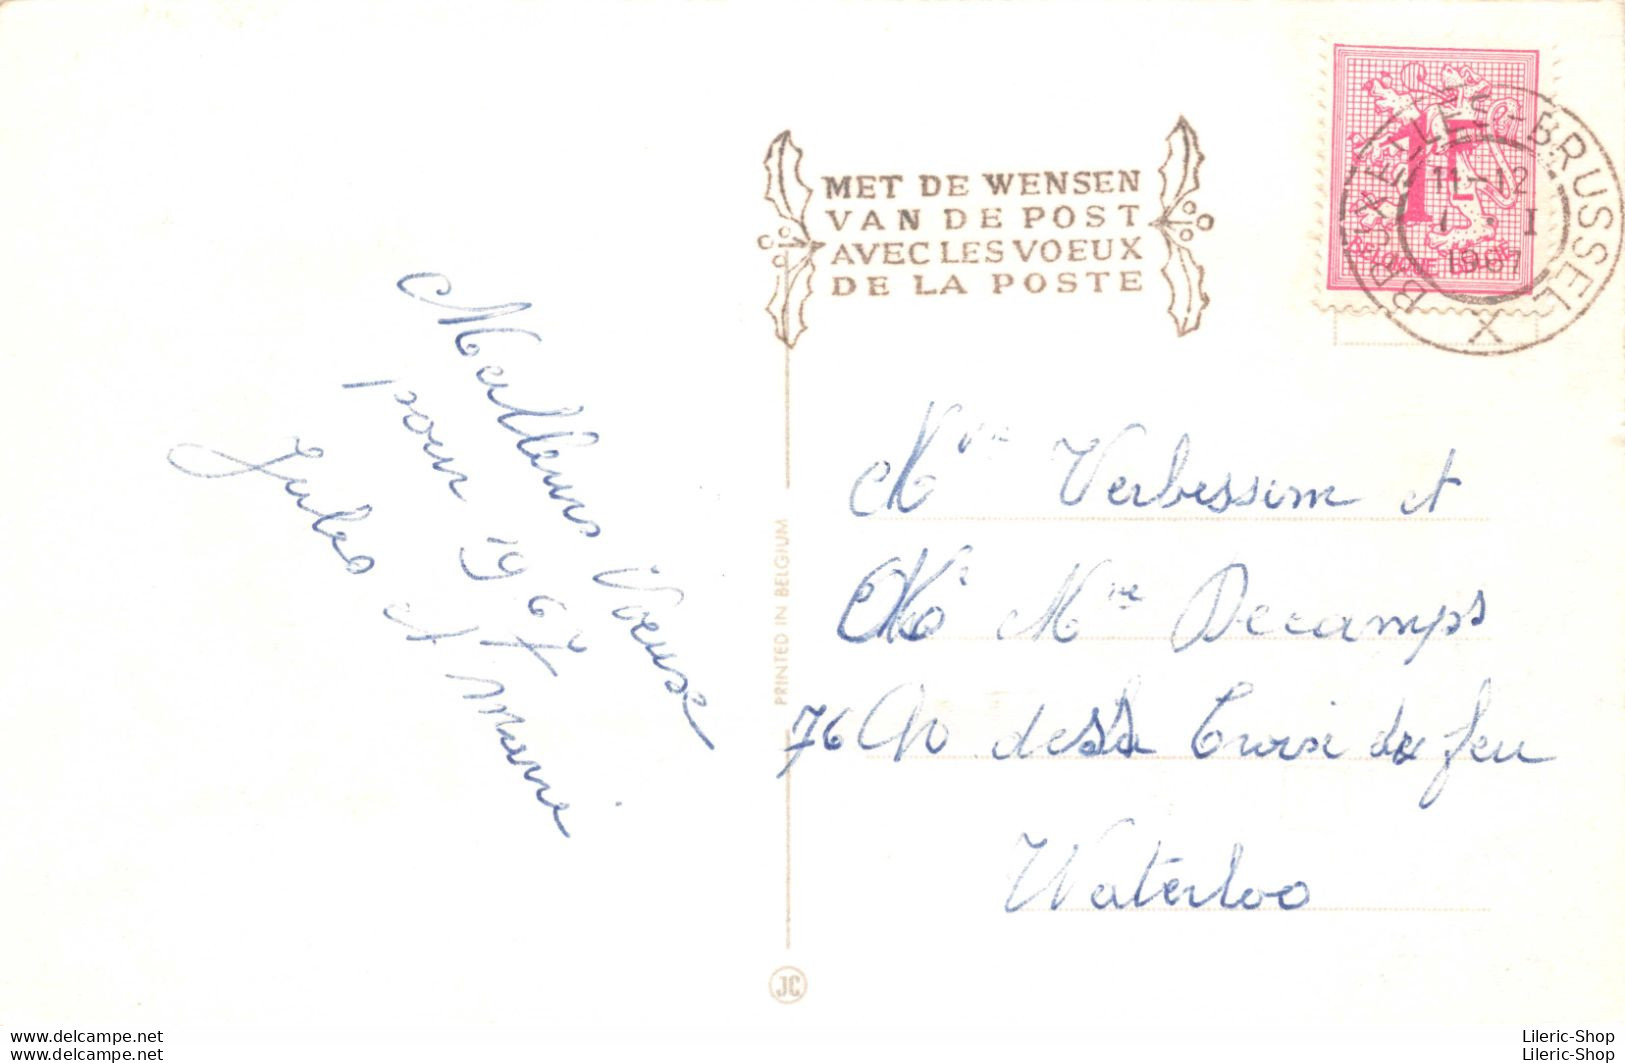 Lot de 4 cartes postales belges de "Bonne année" cpsm 1962 à 1967 ♦♦♦